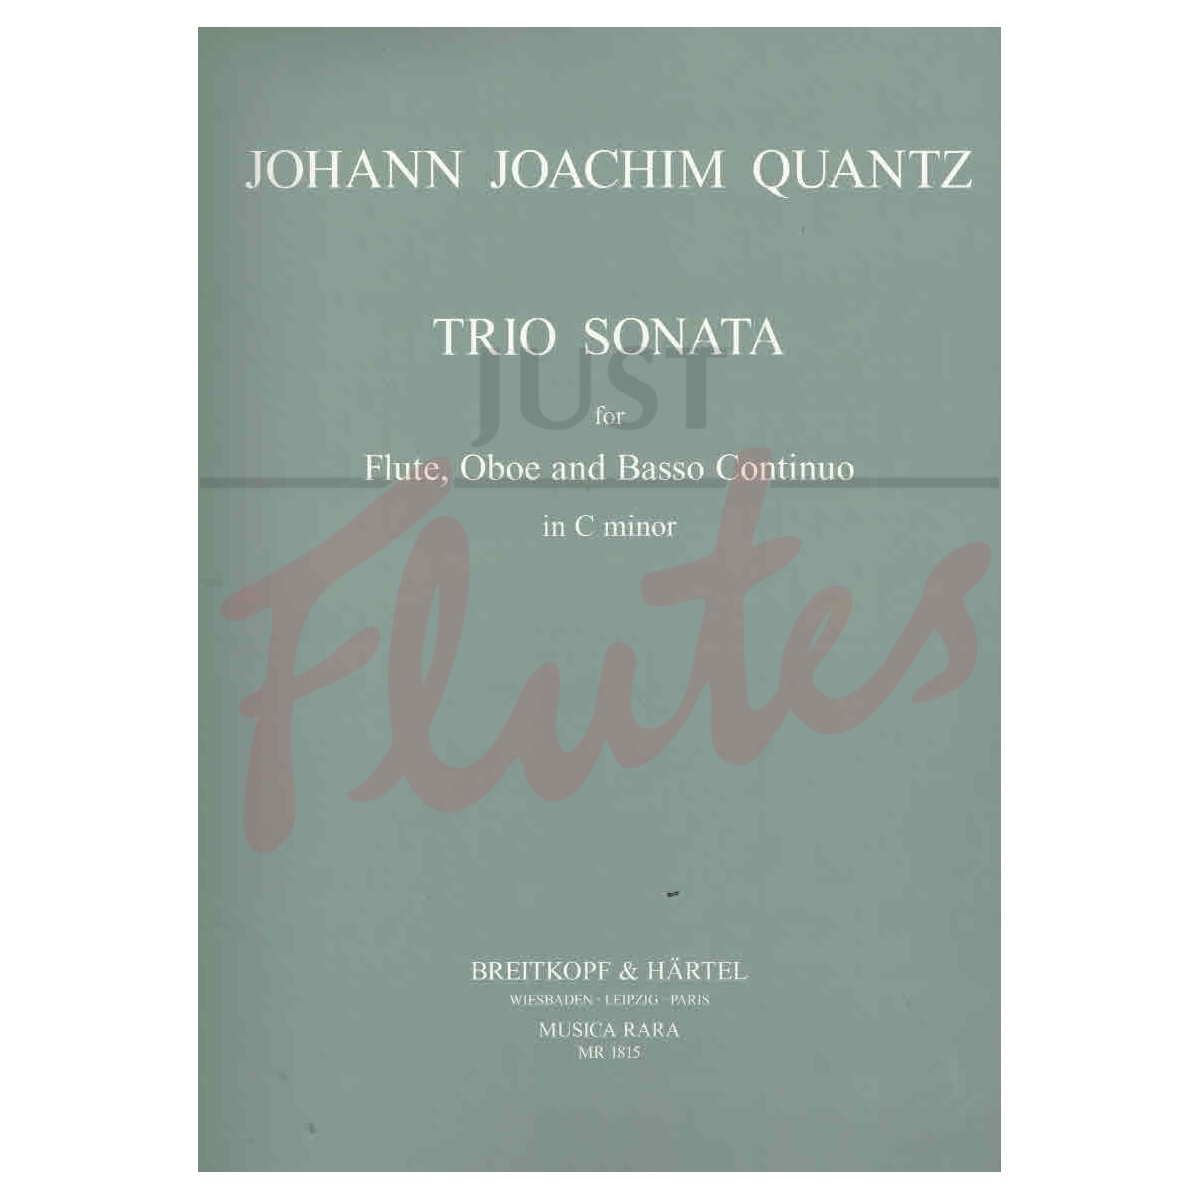 Trio Sonata in C minor for Flute, Oboe and Basso Continuo